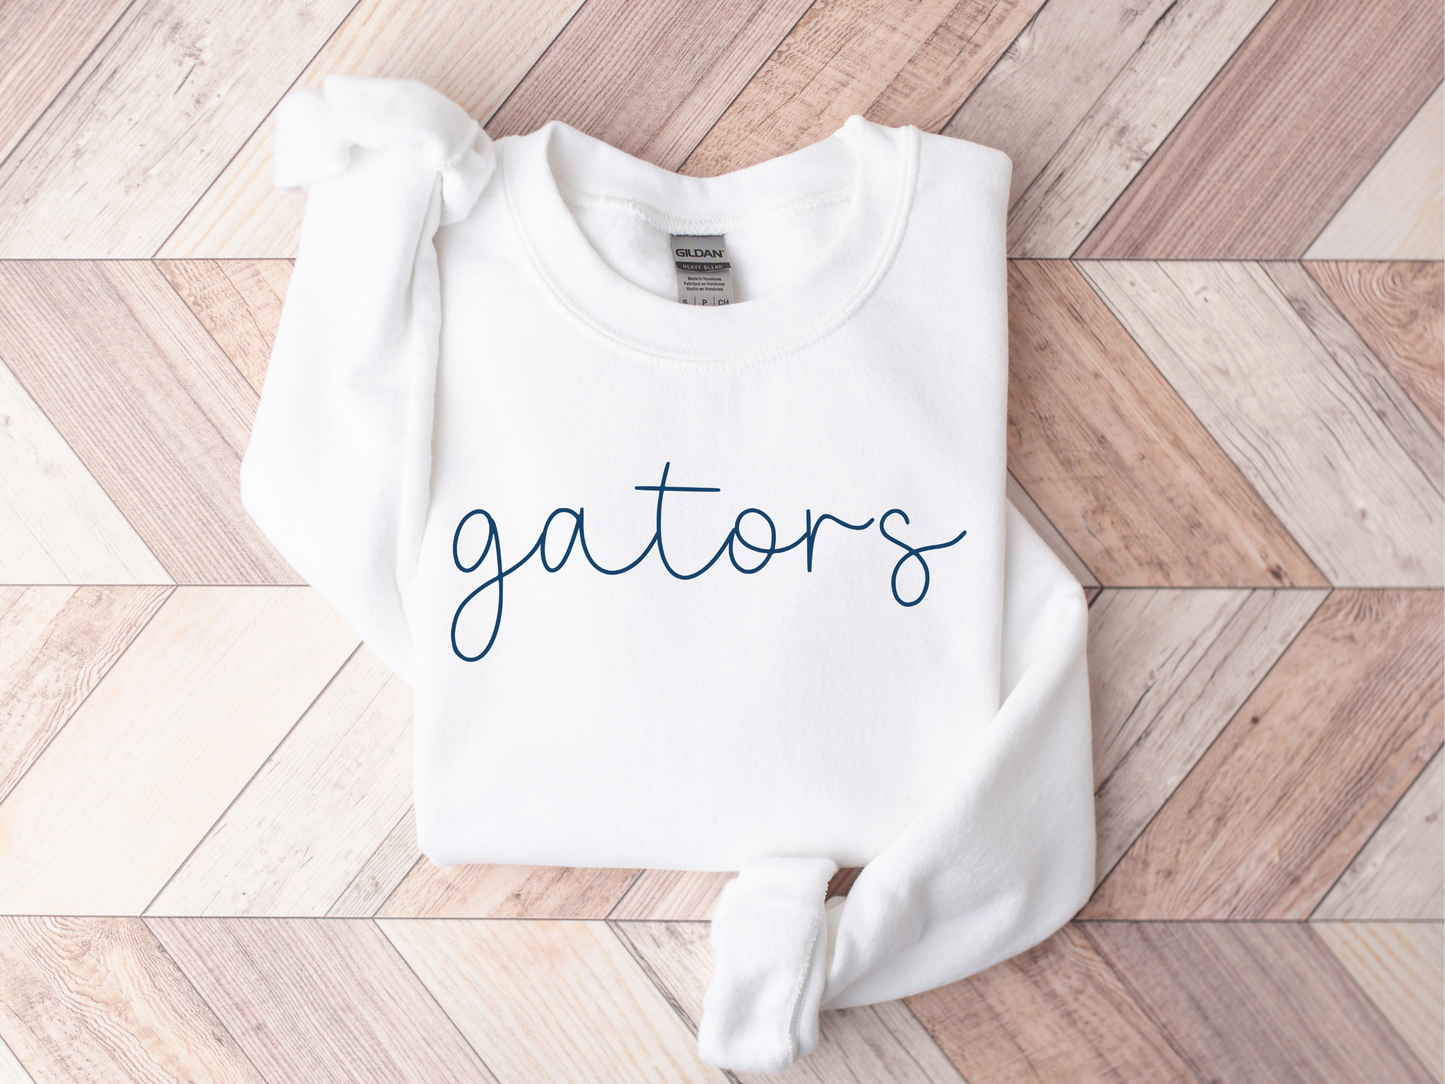 Gators Minimalist Adult Unisex Sweatshirt